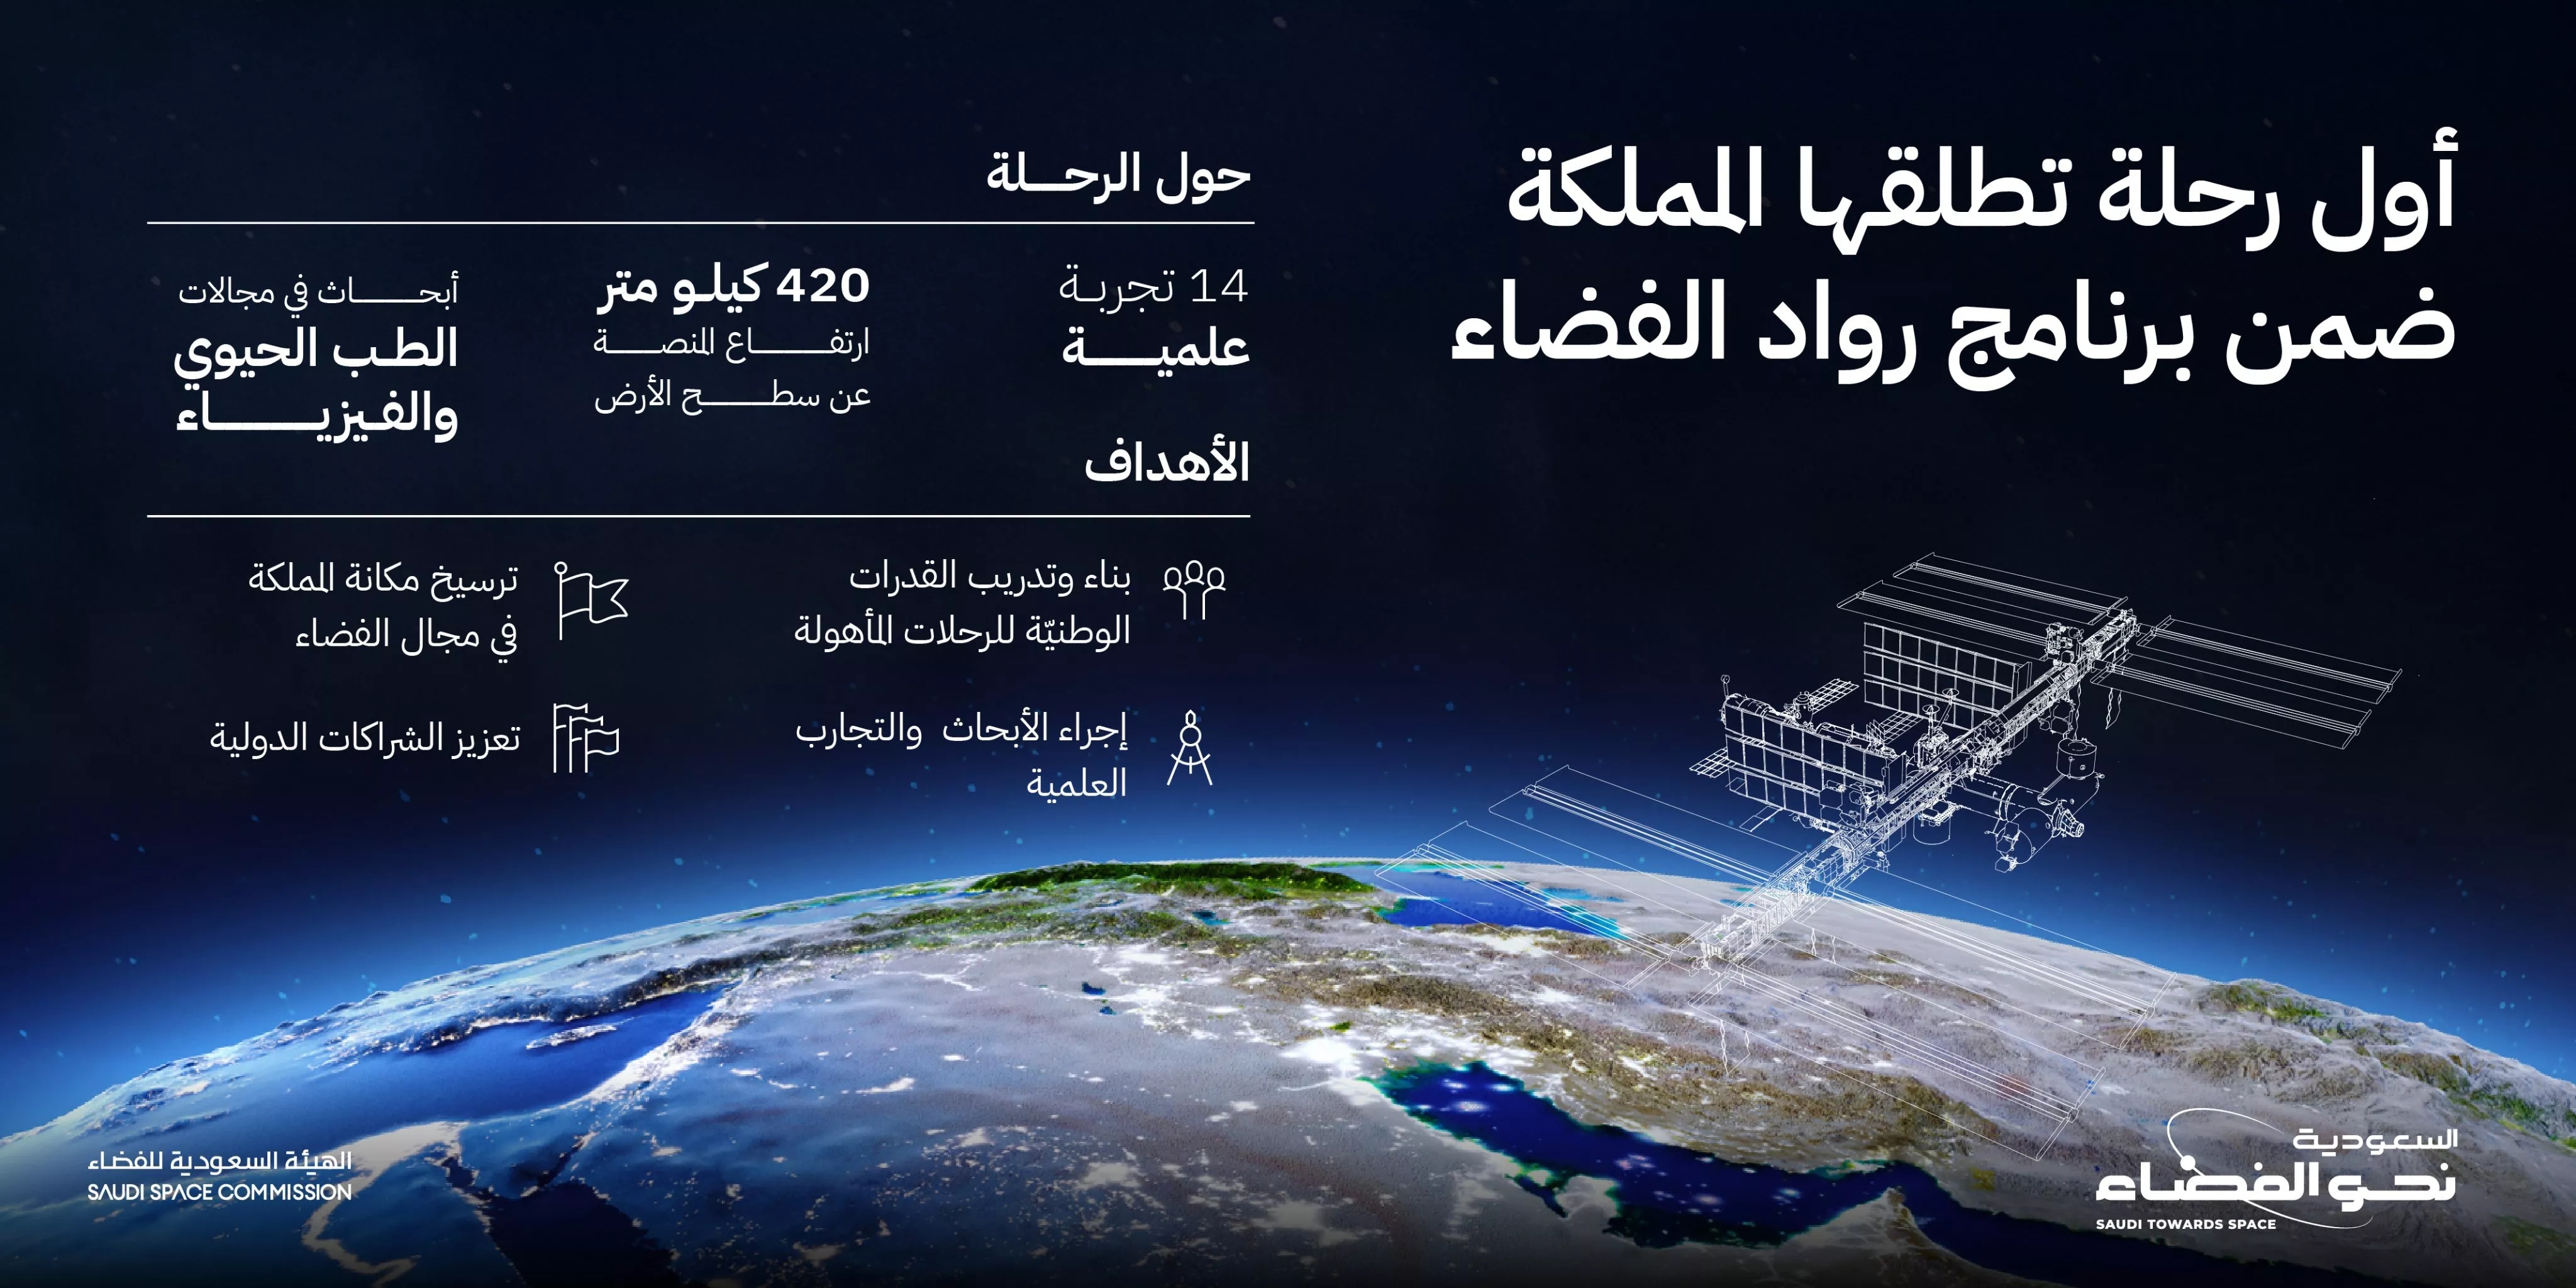 ريانة برناوي، أول سعودية ستُرسل إلى المحطة الدولية في الفضاء